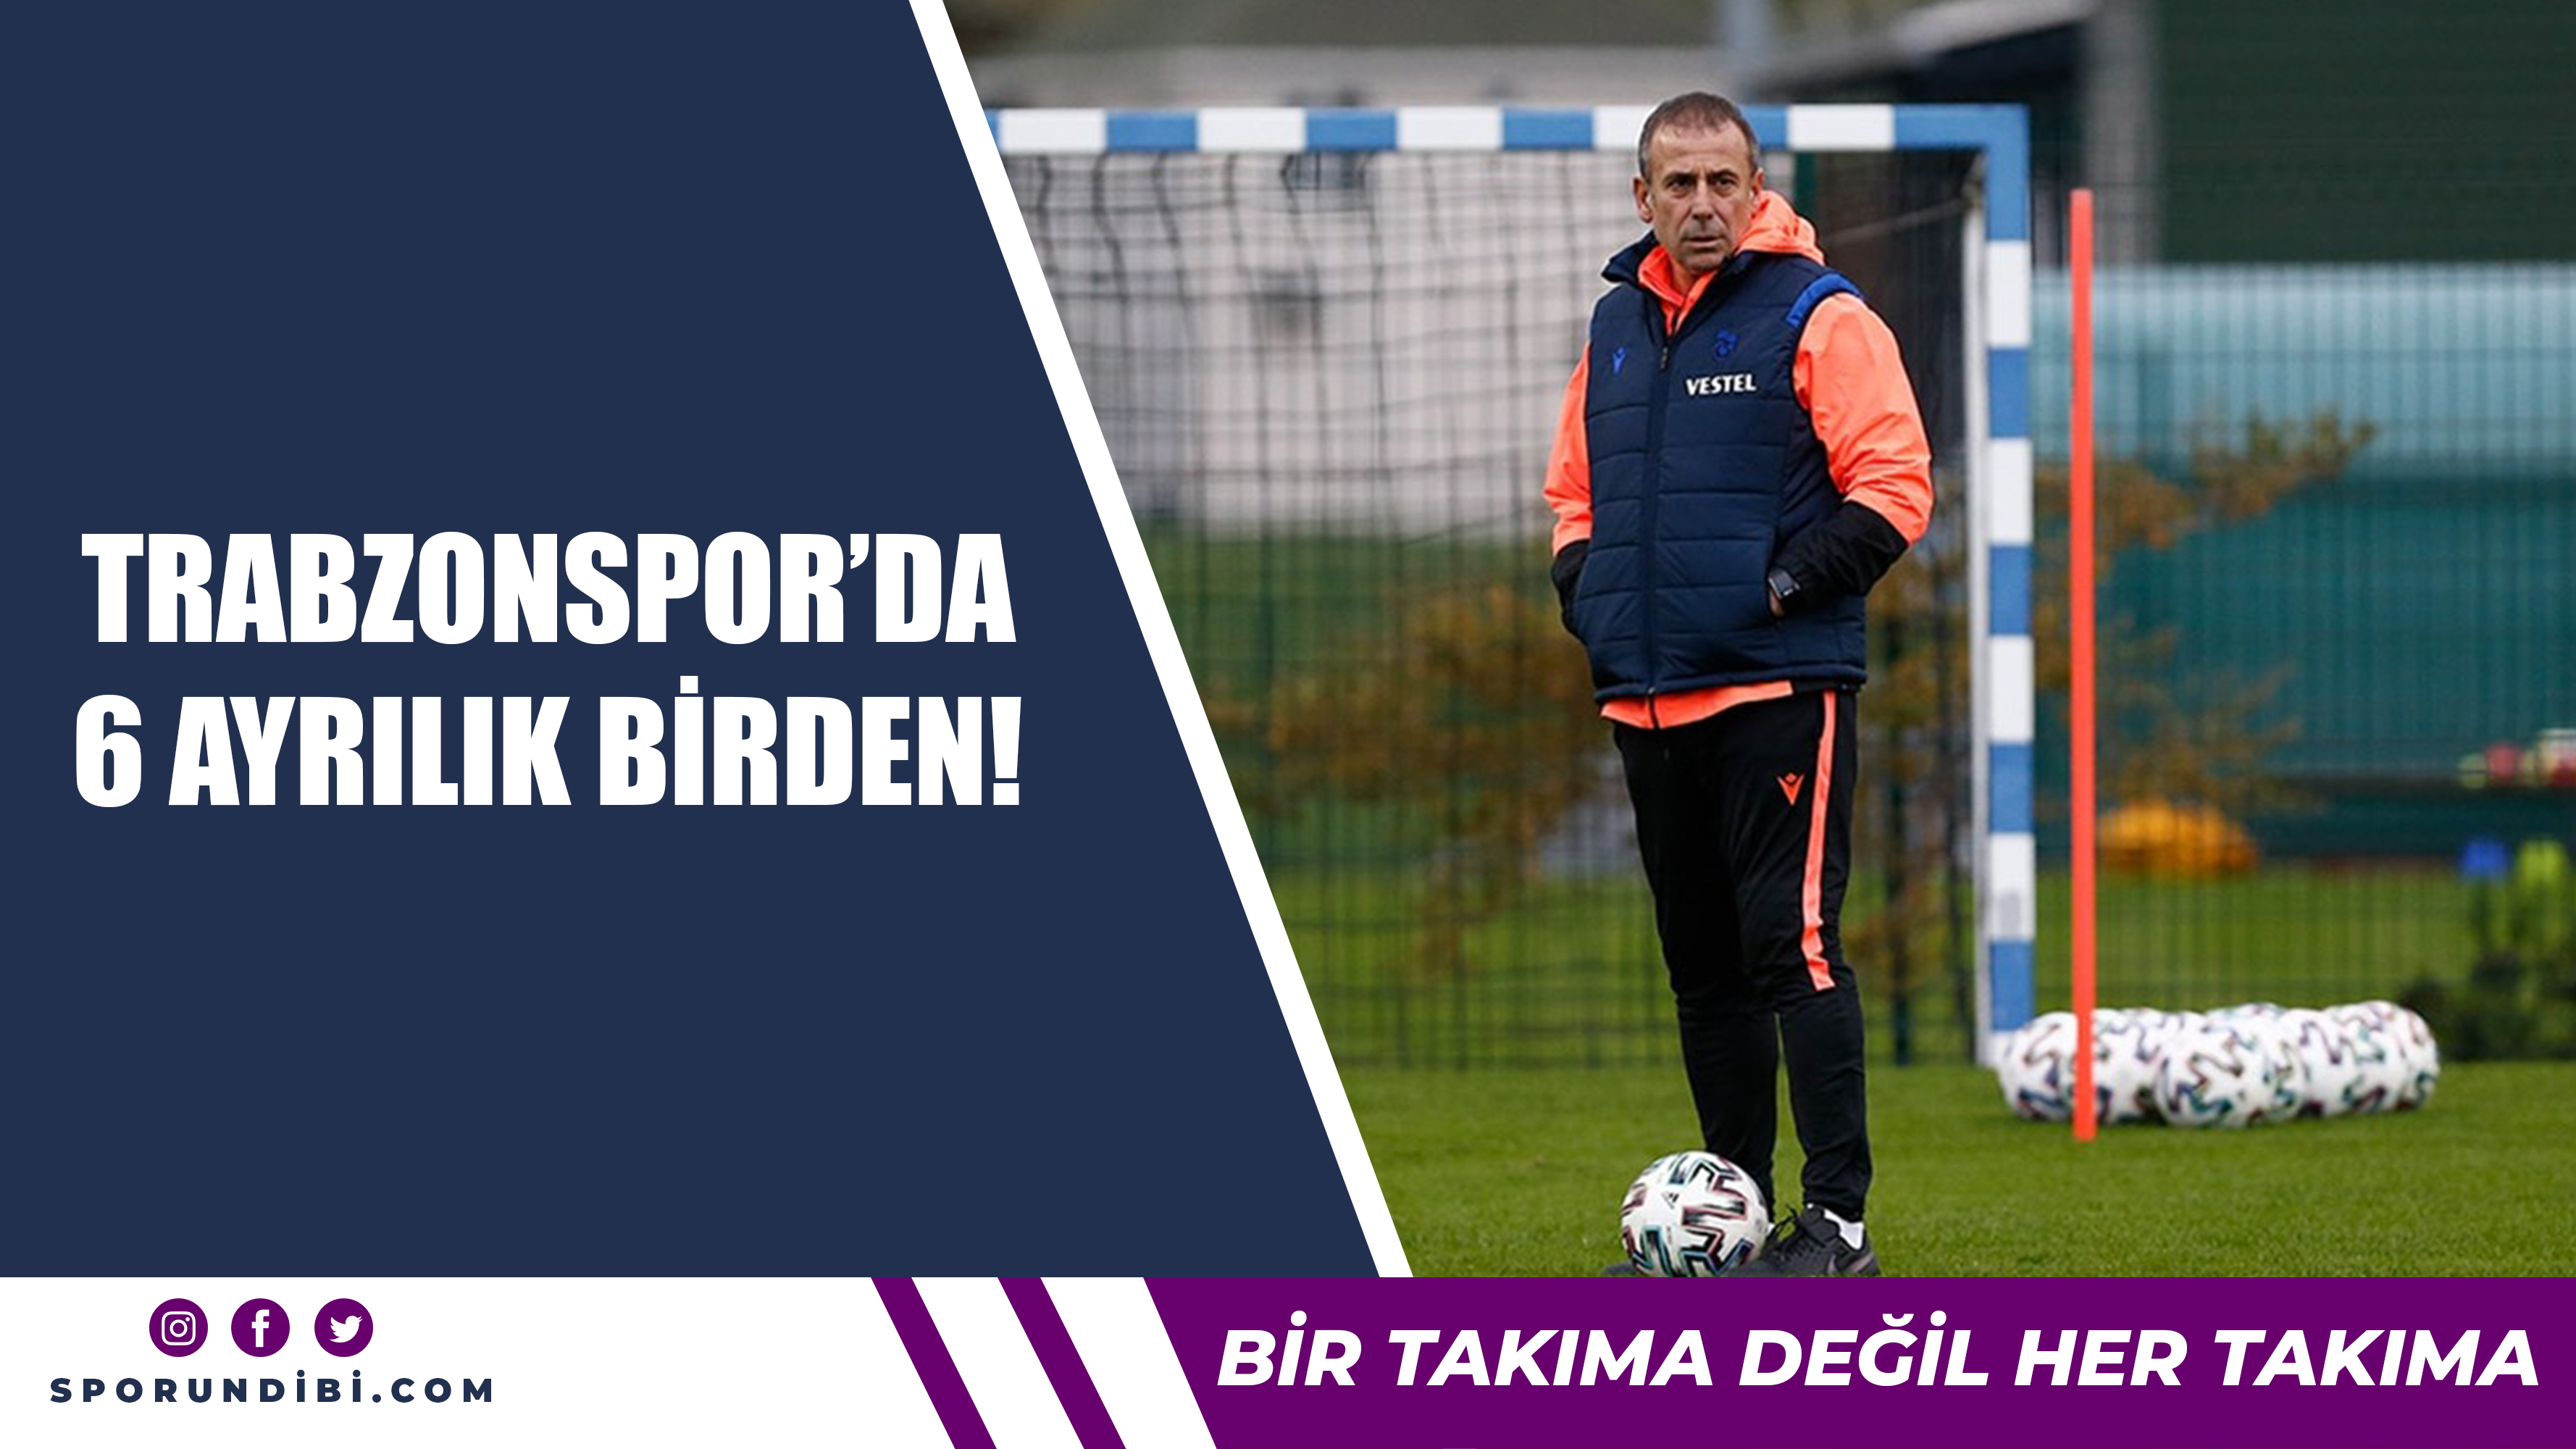 Trabzonspor'da 6 ayrılık birden!